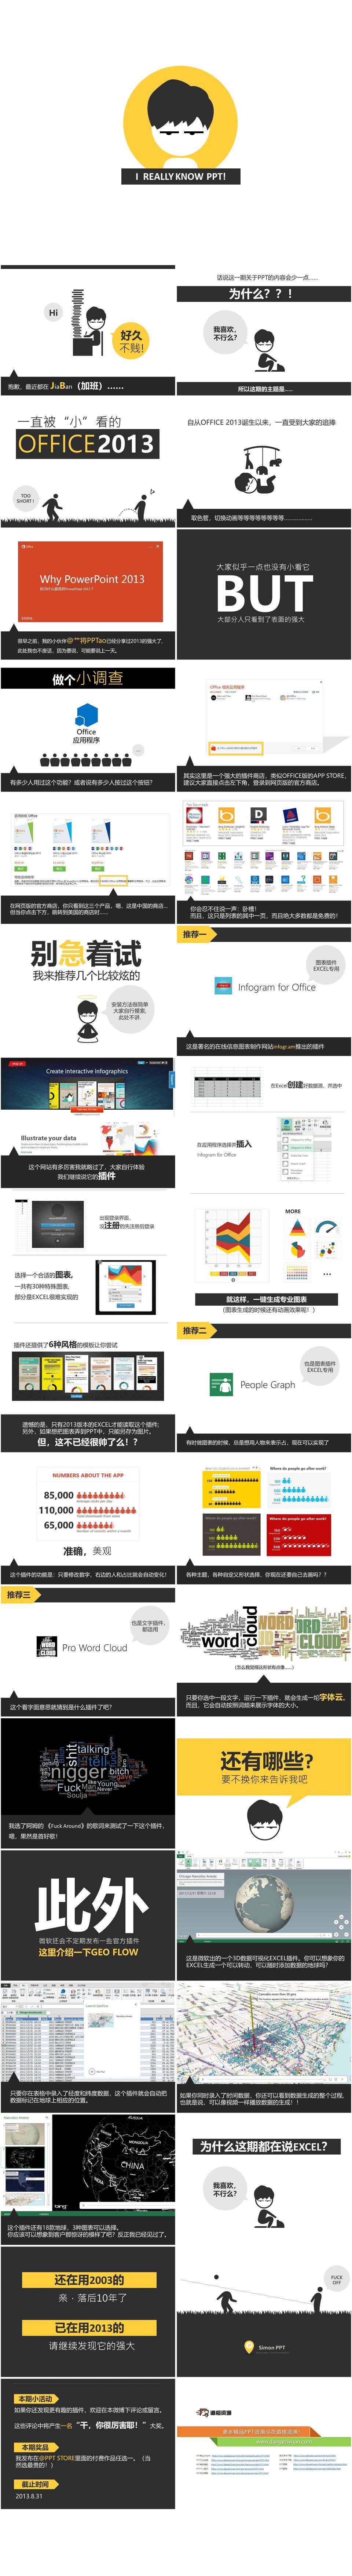 PowerPoint2013插件介绍